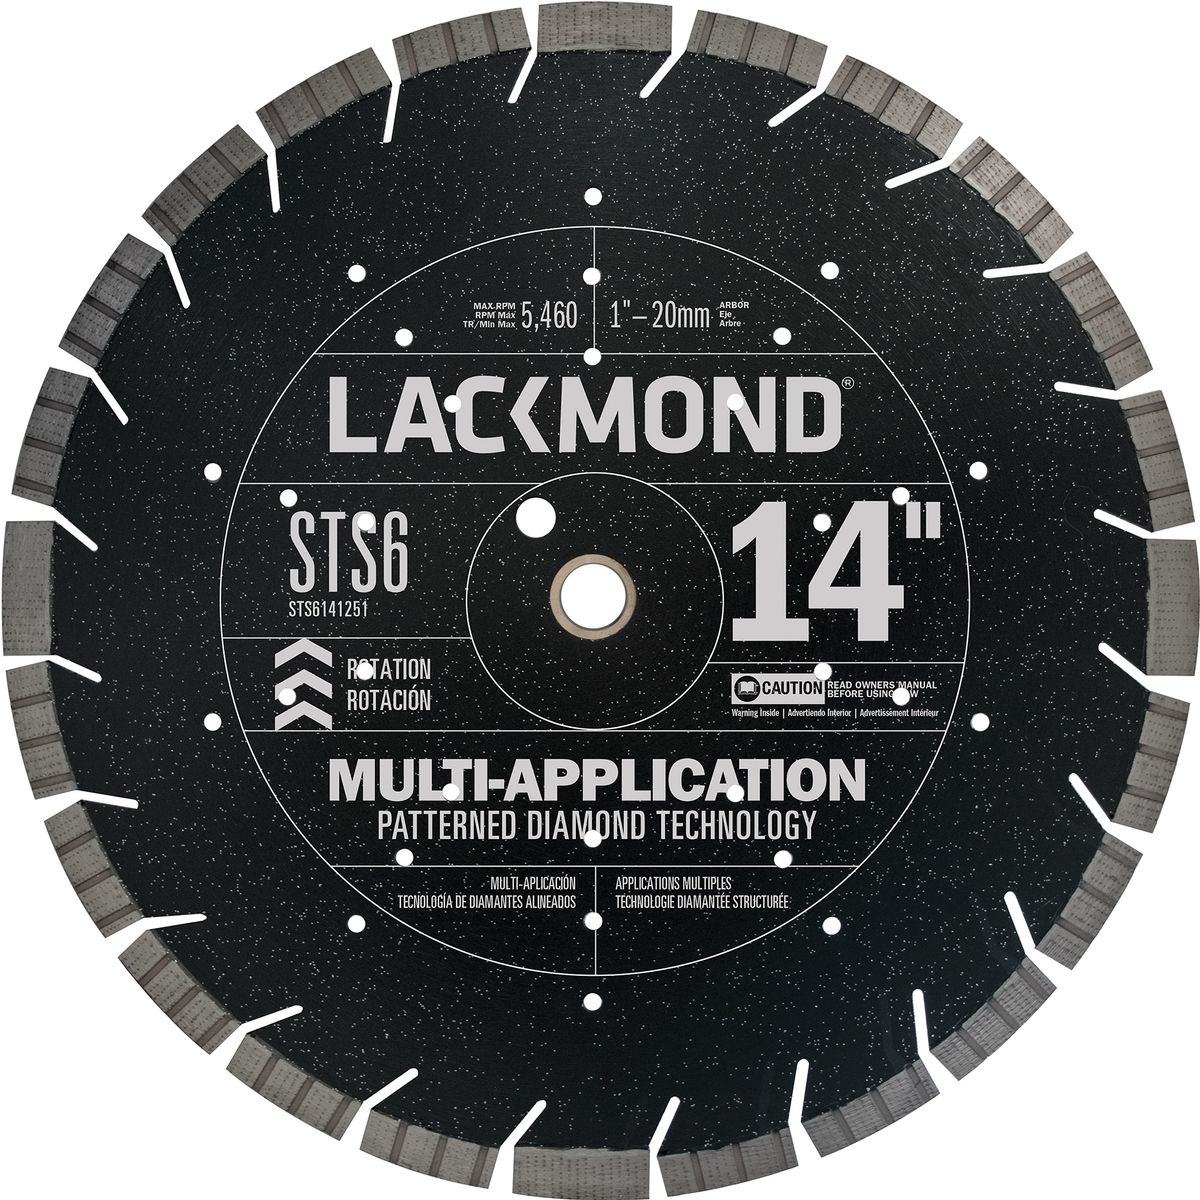 Lockmond Diamond blade